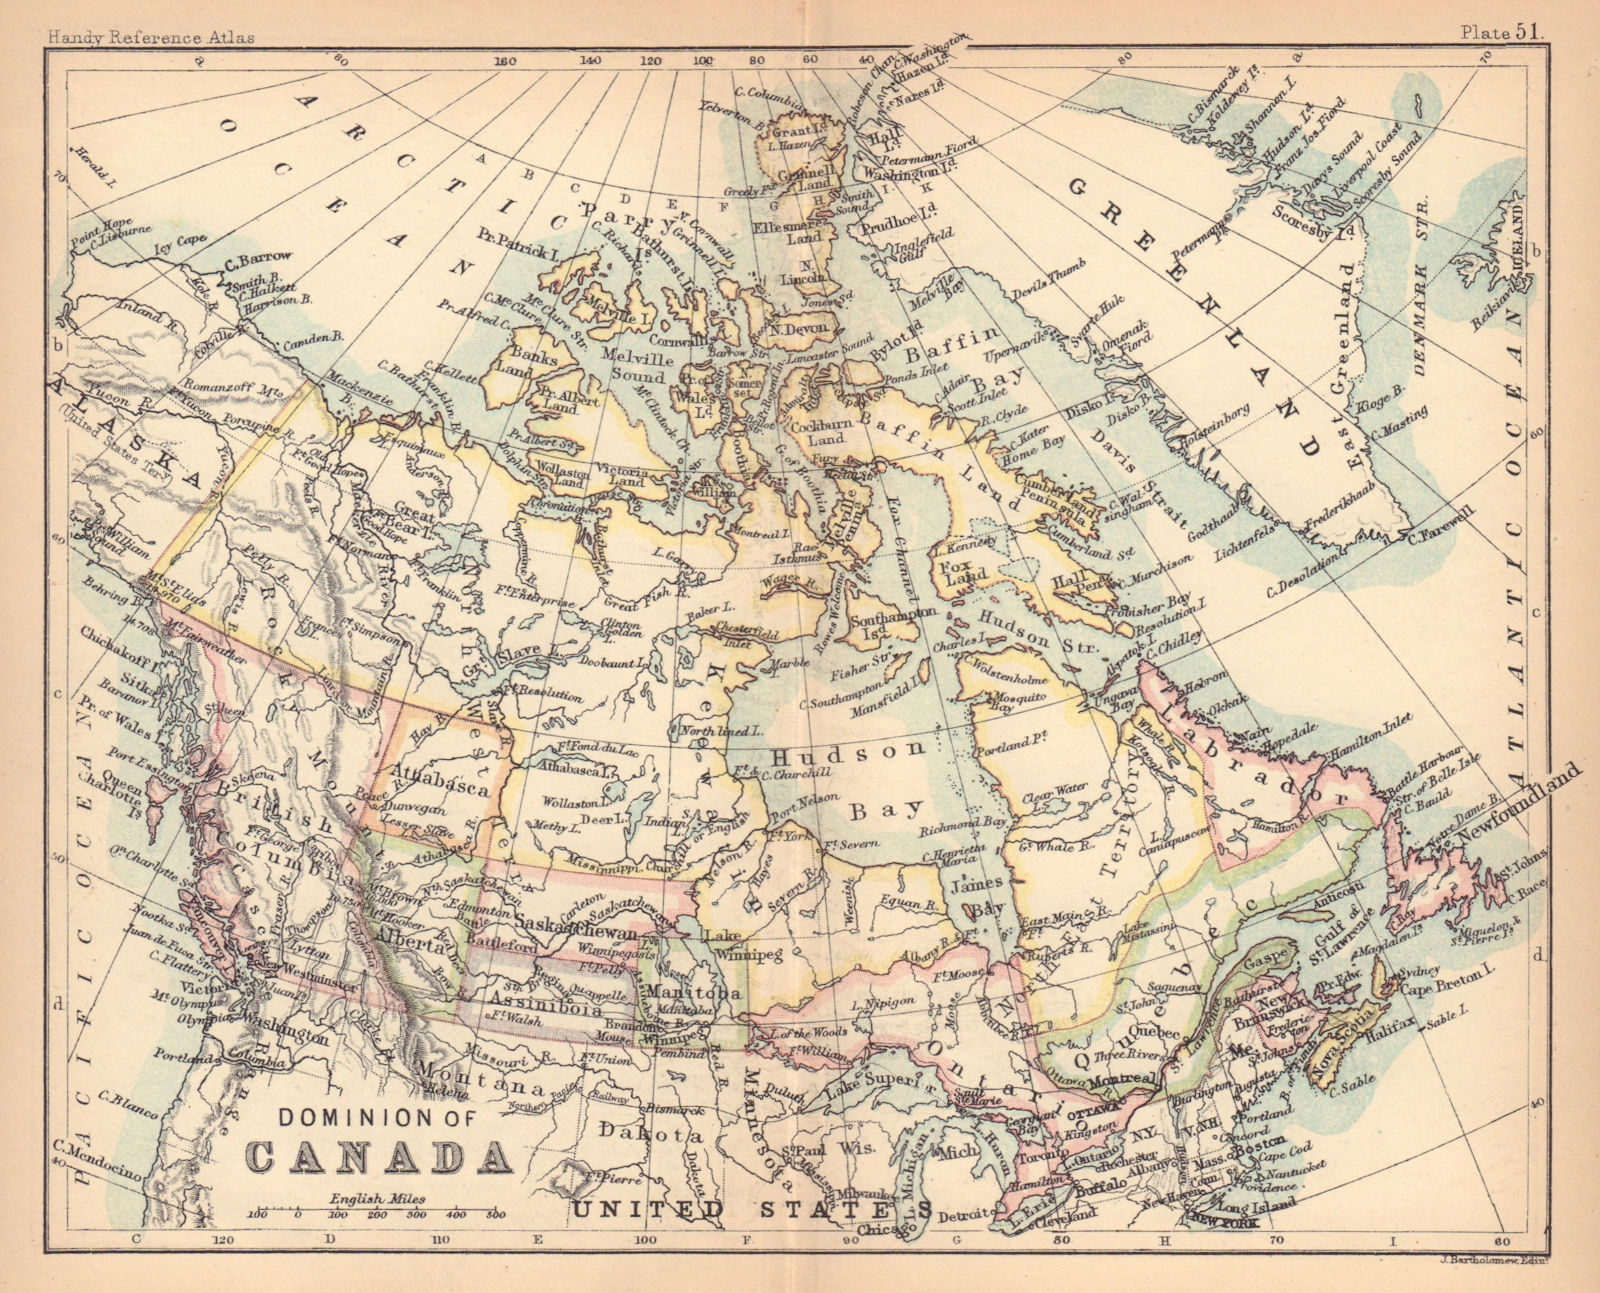 Dominion of Canada. Manitoba postage stamp. Athabasca. BARTHOLOMEW 1888 map